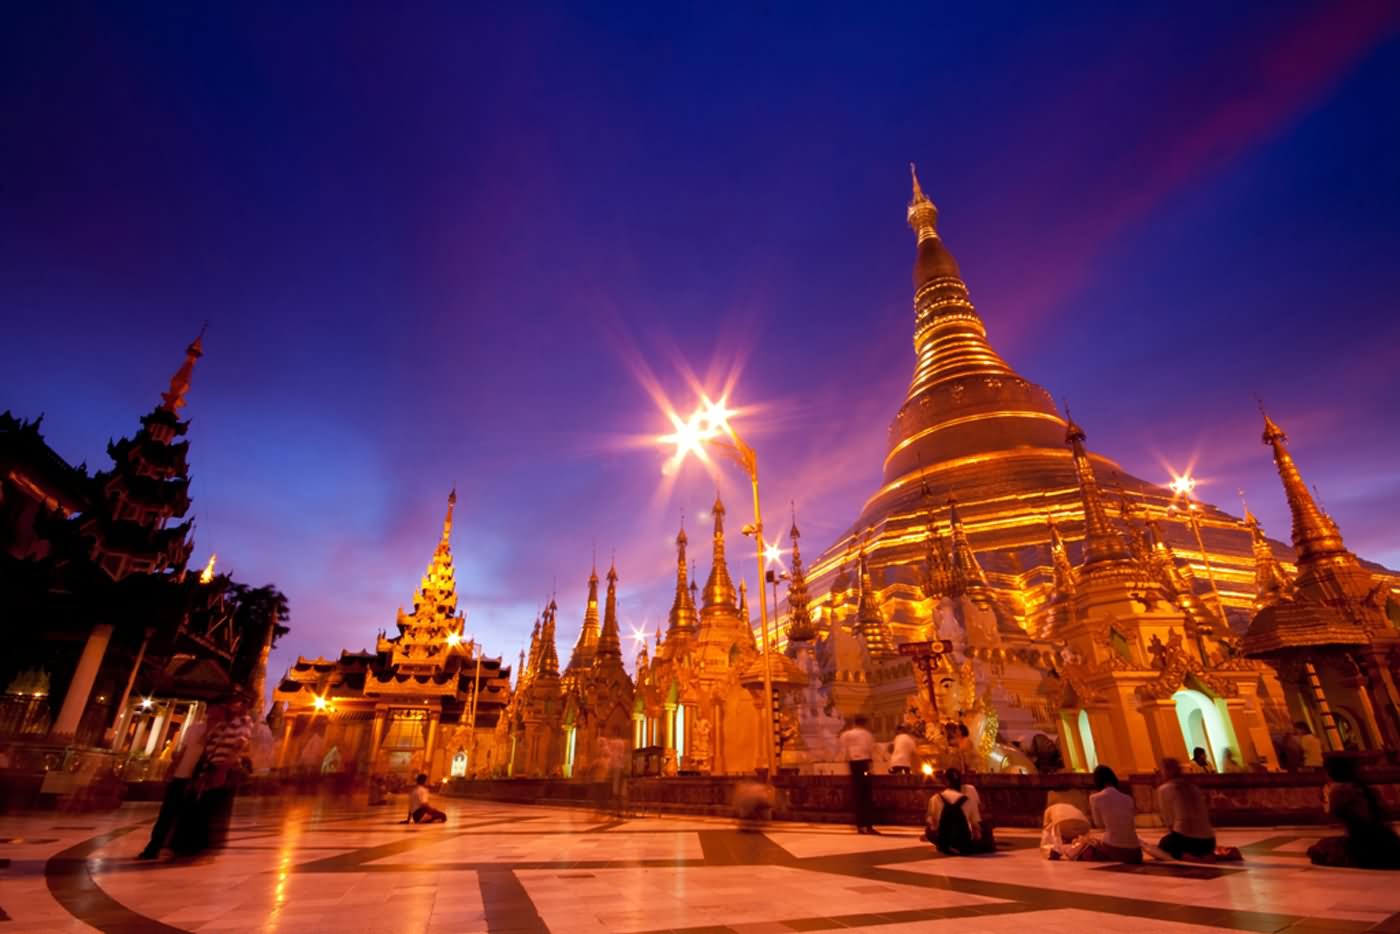 Shwedagon Pagoda In Twilight At Night In Yangon, Myanmar